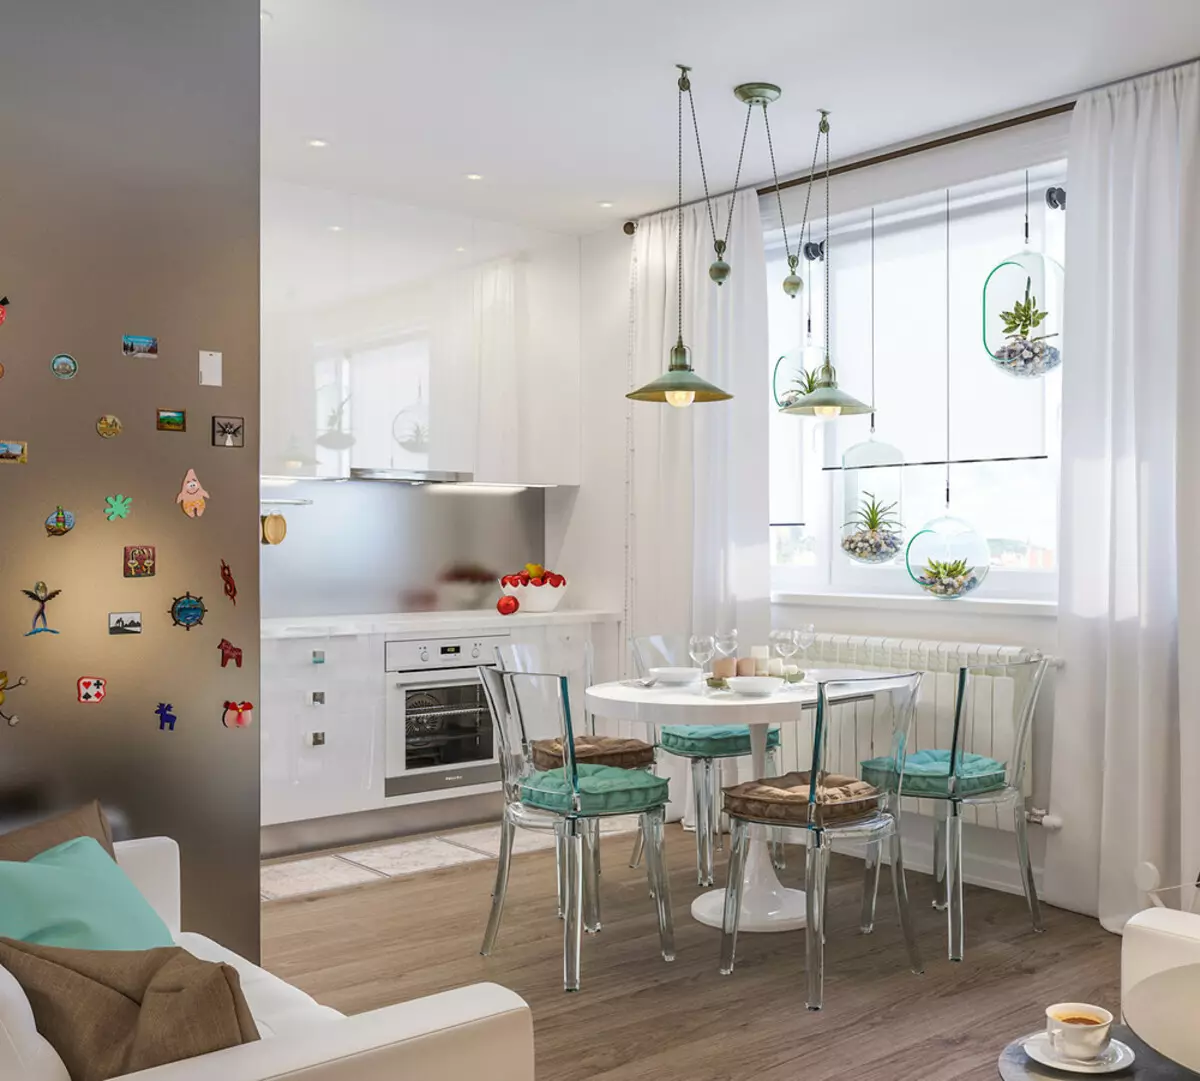 Design de cozinha de cozinha (152 fotos): Interior de quartos combinados no apartamento, exemplos de projetos de cozinha, combinados com o salão, opções de design 9515_81